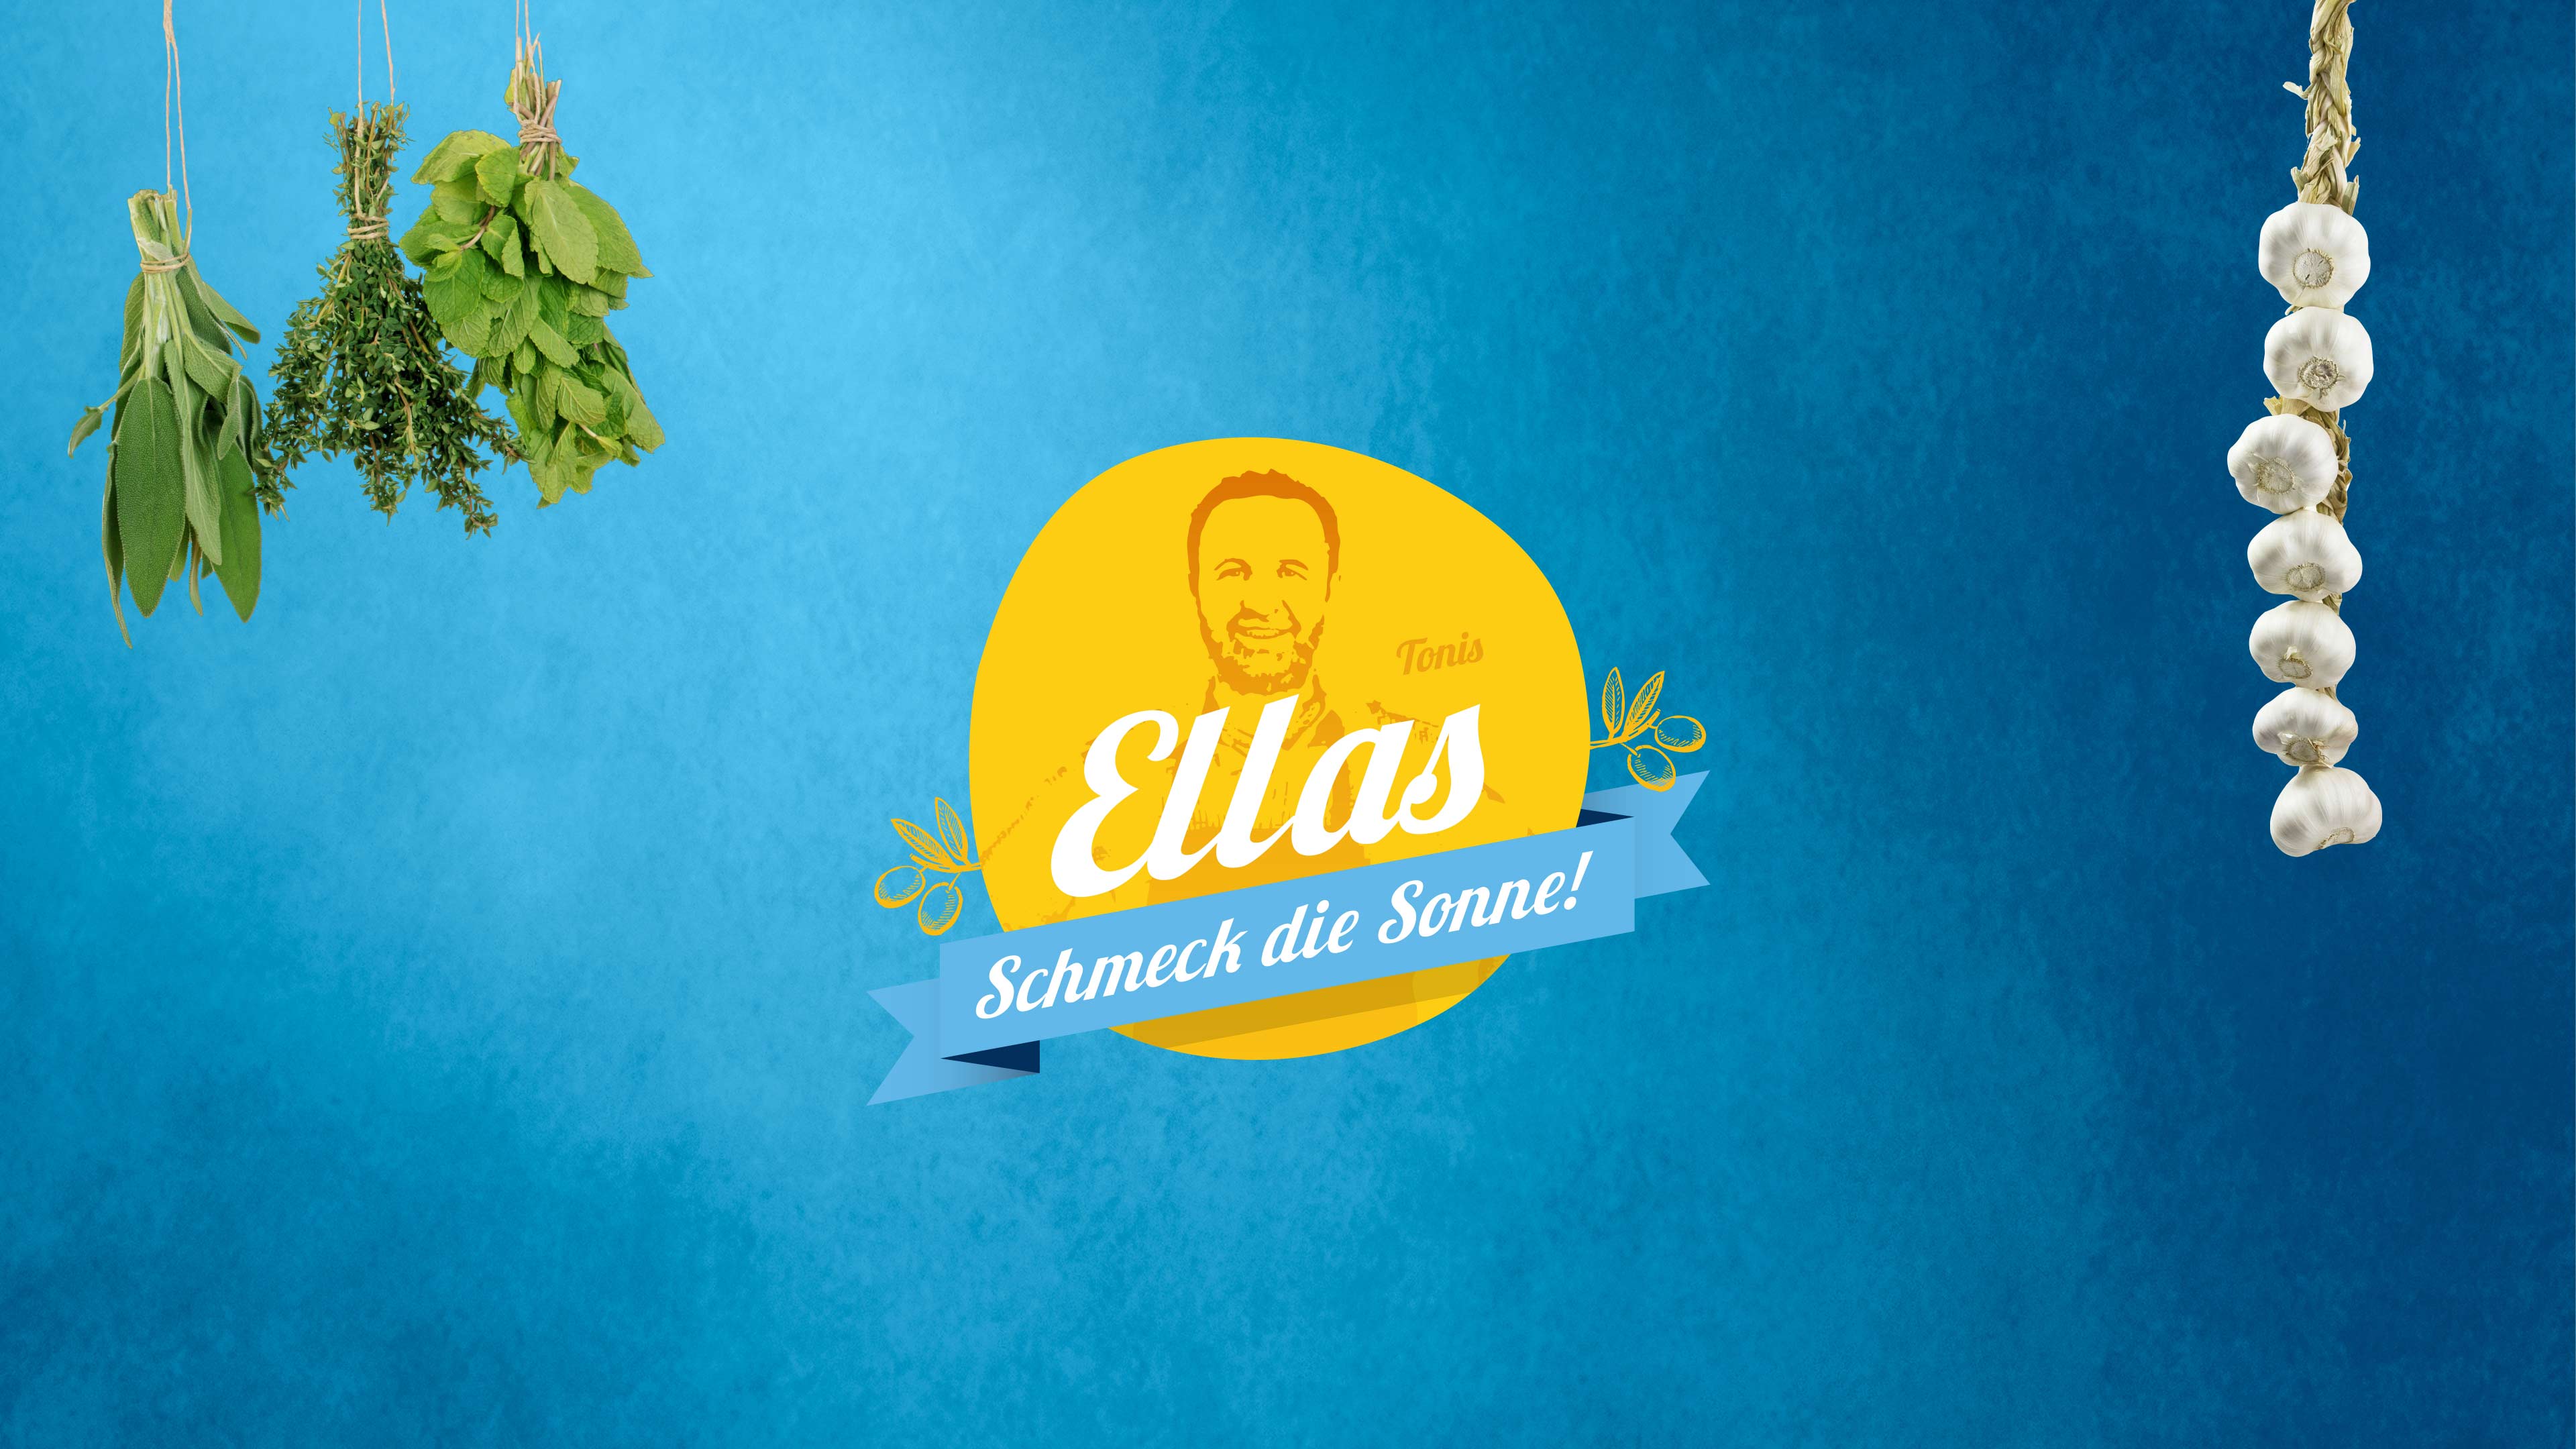 Gelbes Ellas-Logo mit Schriftzug "Schmeck die Sonne" vor blauem Hintergrund und Knoblauchzehen und Kräutern